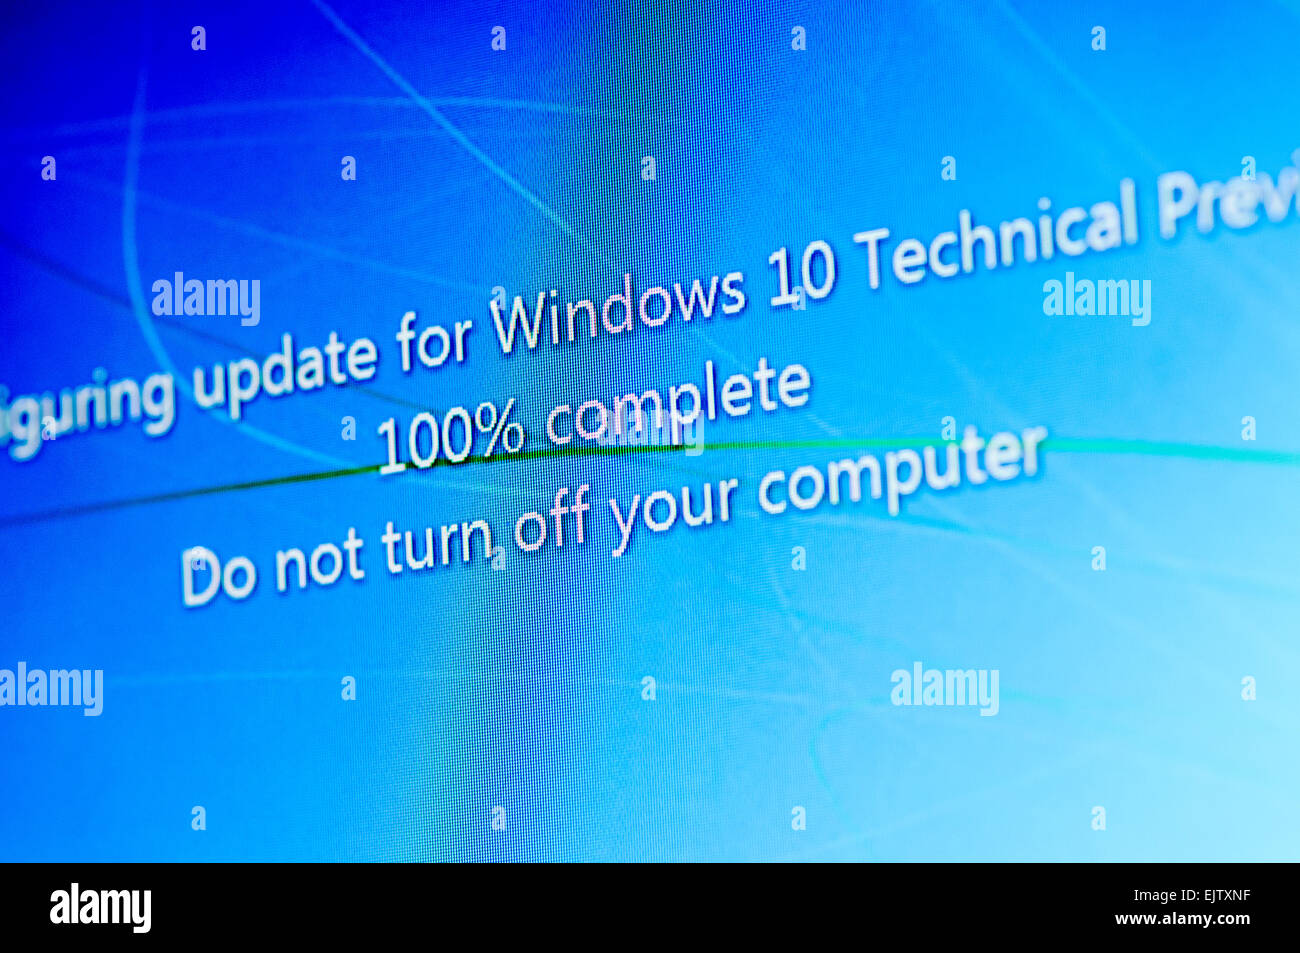 Instalar Windows 10 Technical Preview, una versión beta pública. Foto de stock